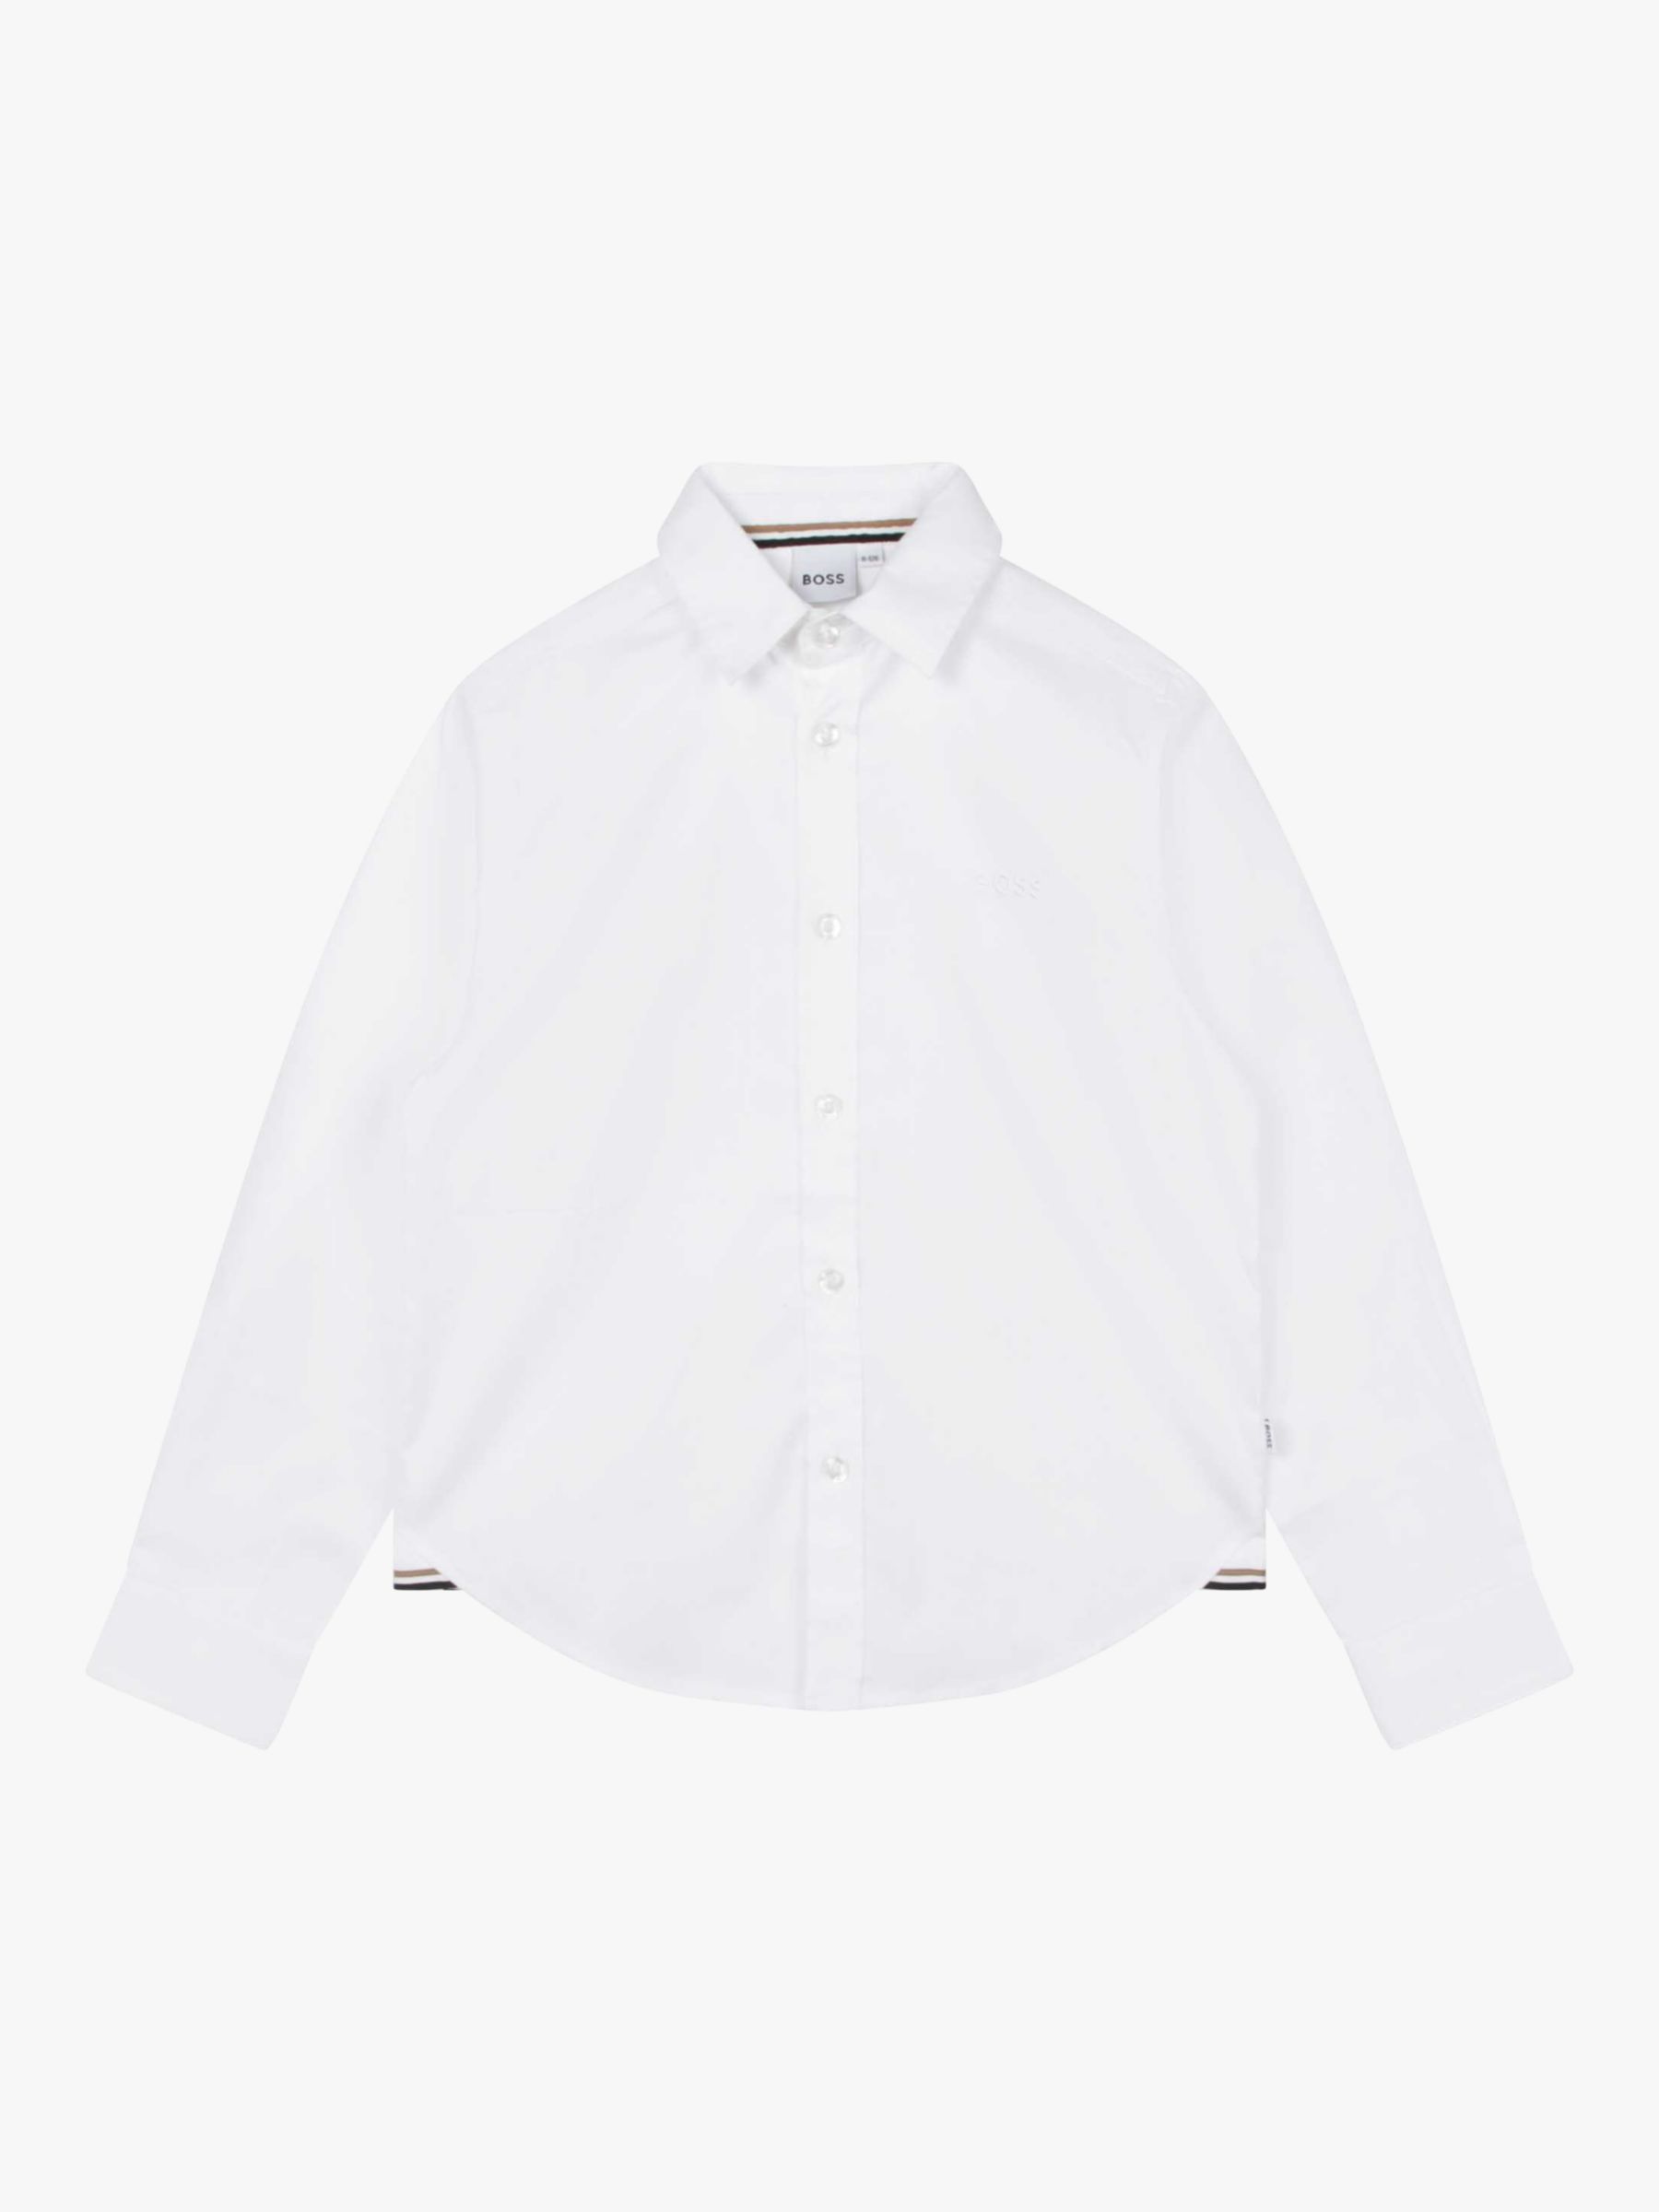 Детская оксфордская рубашка BOSS с длинным рукавом HUGO BOSS, белый рубашка из ткани оксфорд с длинными рукавами xl бежевый